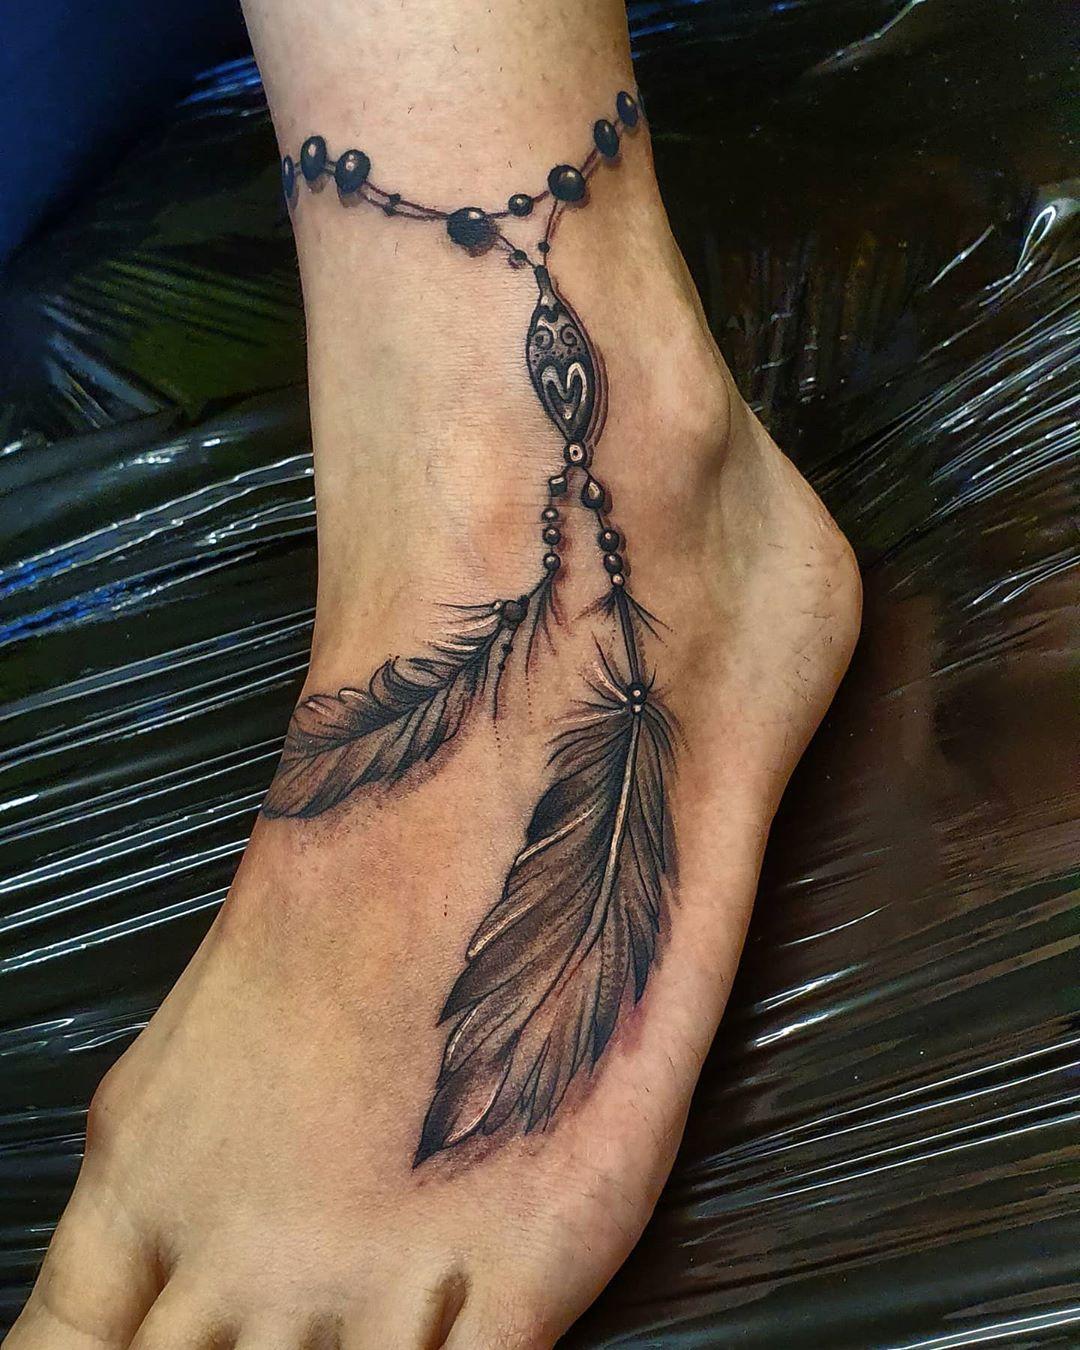 Černobílé tetování s náramkem ke kotníku s peřím v indiánském stylu